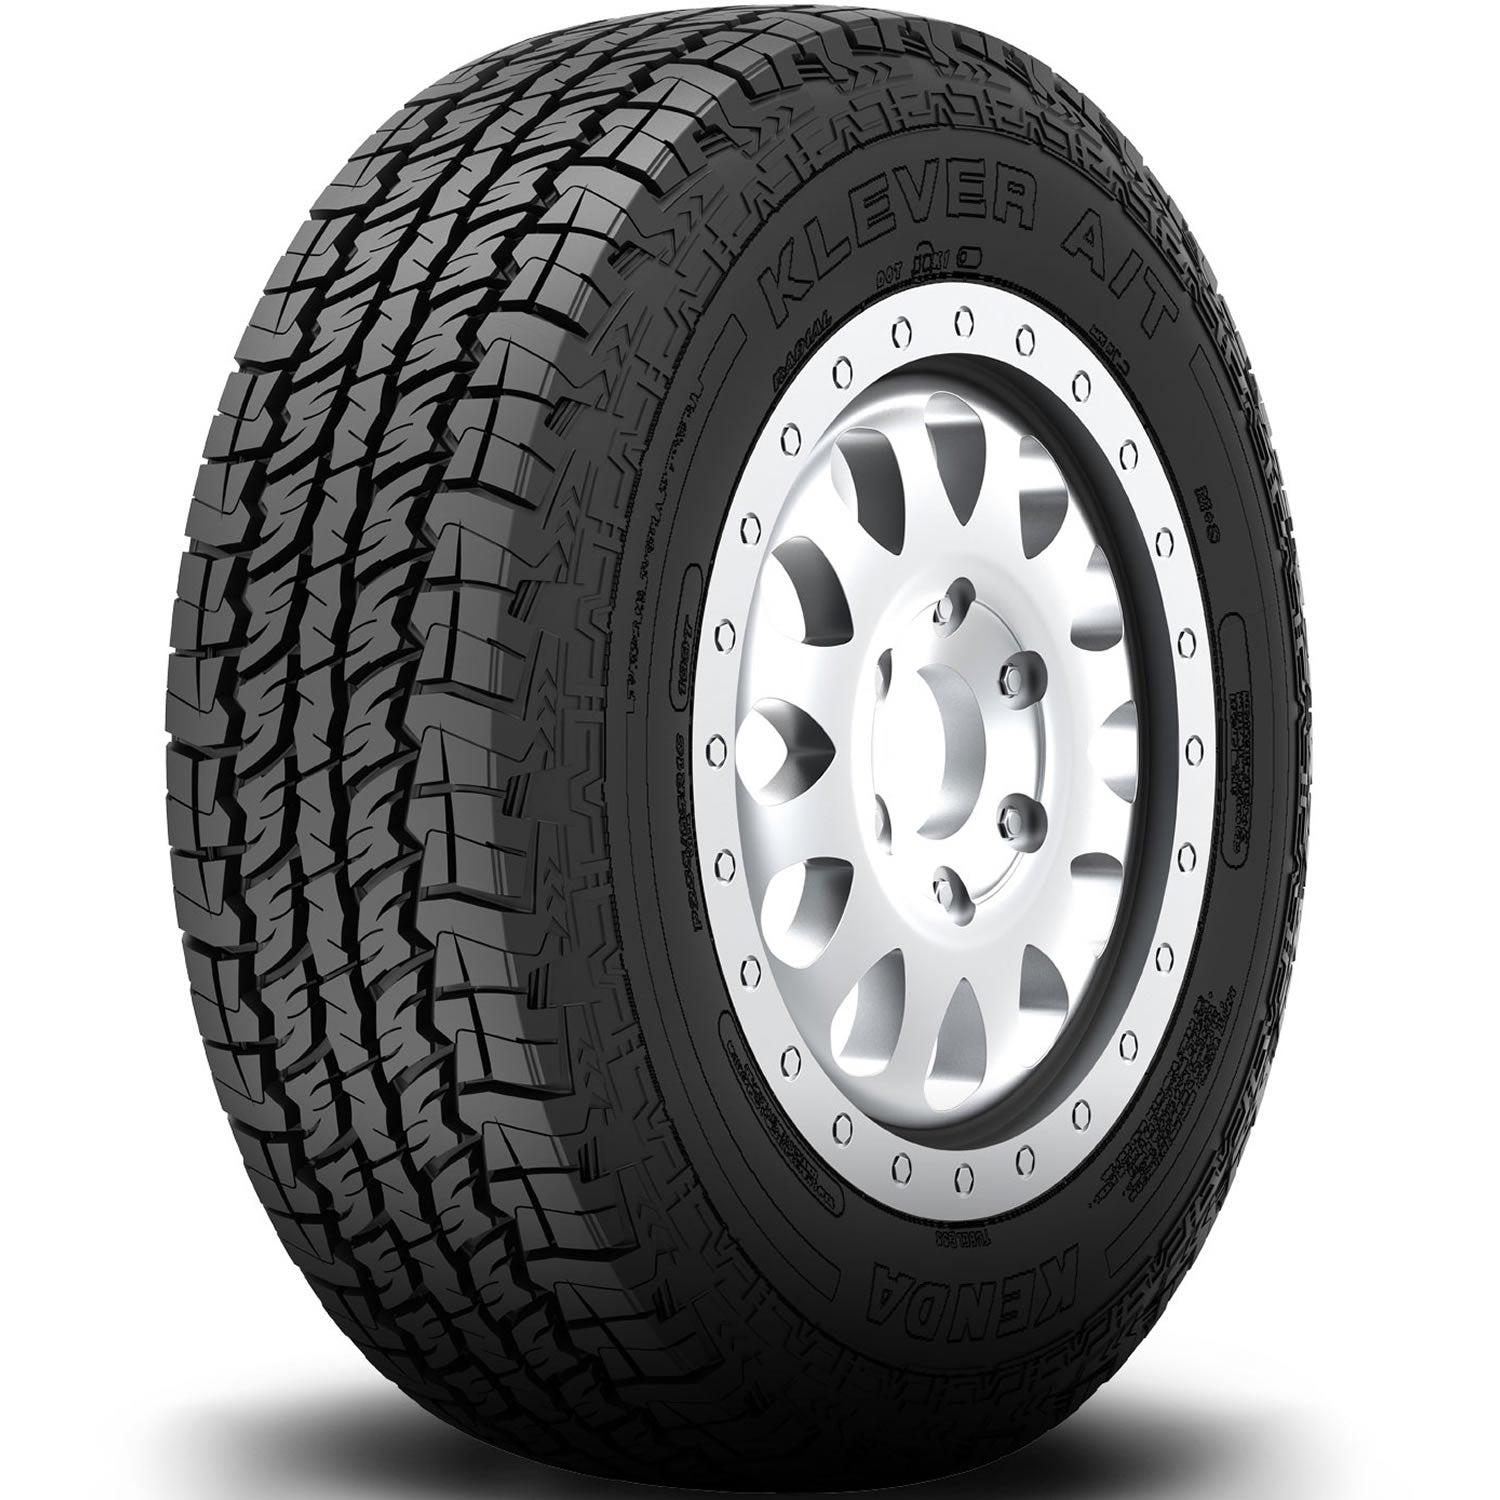 KENDA KLEVER AT LT235/75R15 (28.9X9.3R 15) Tires